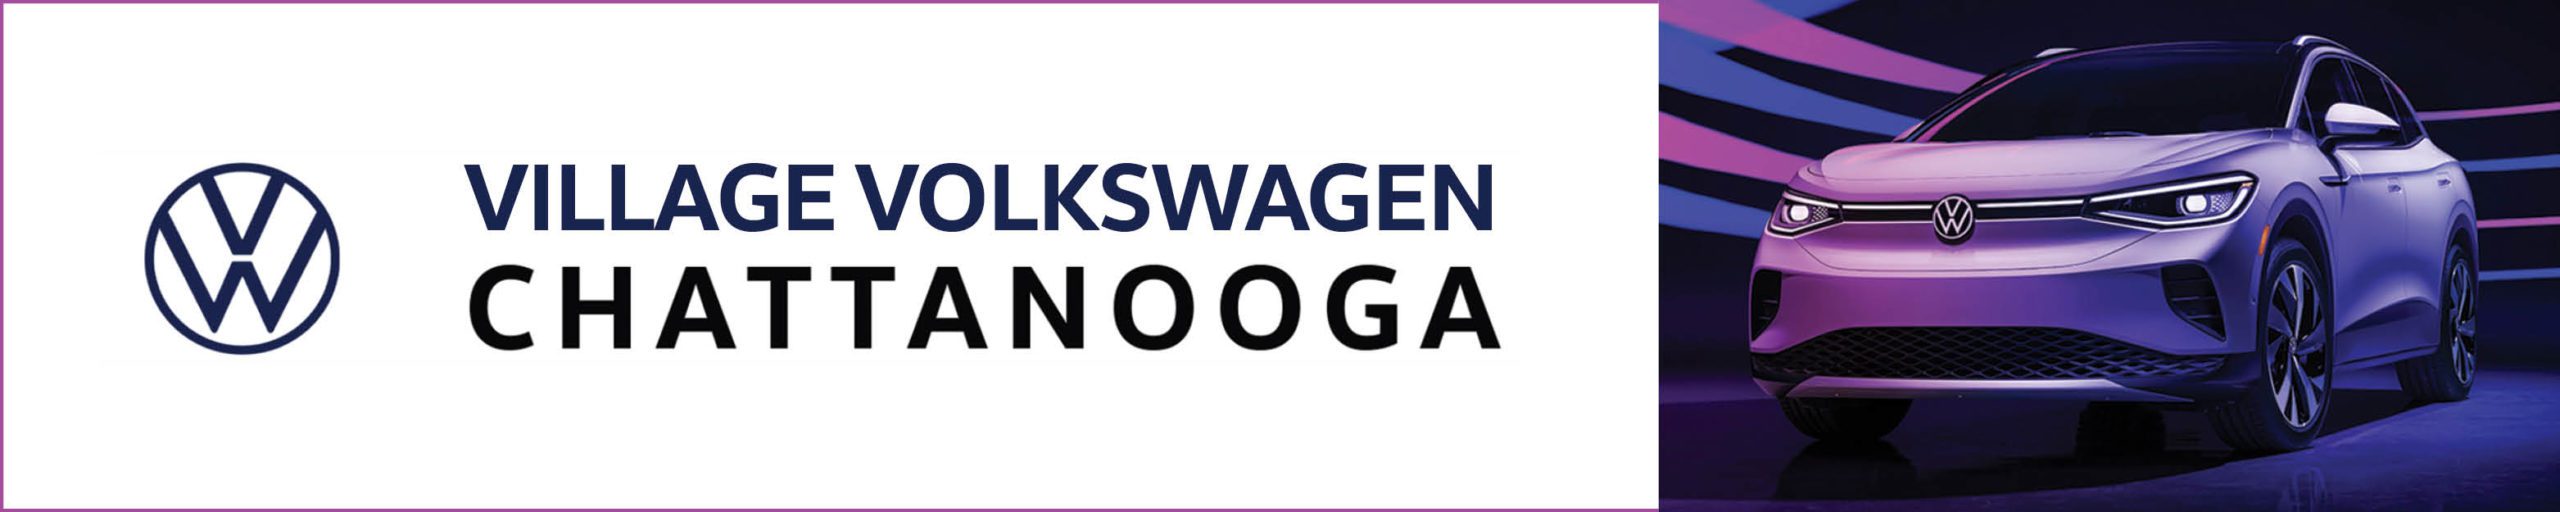 Village Volkswagen Web Ad